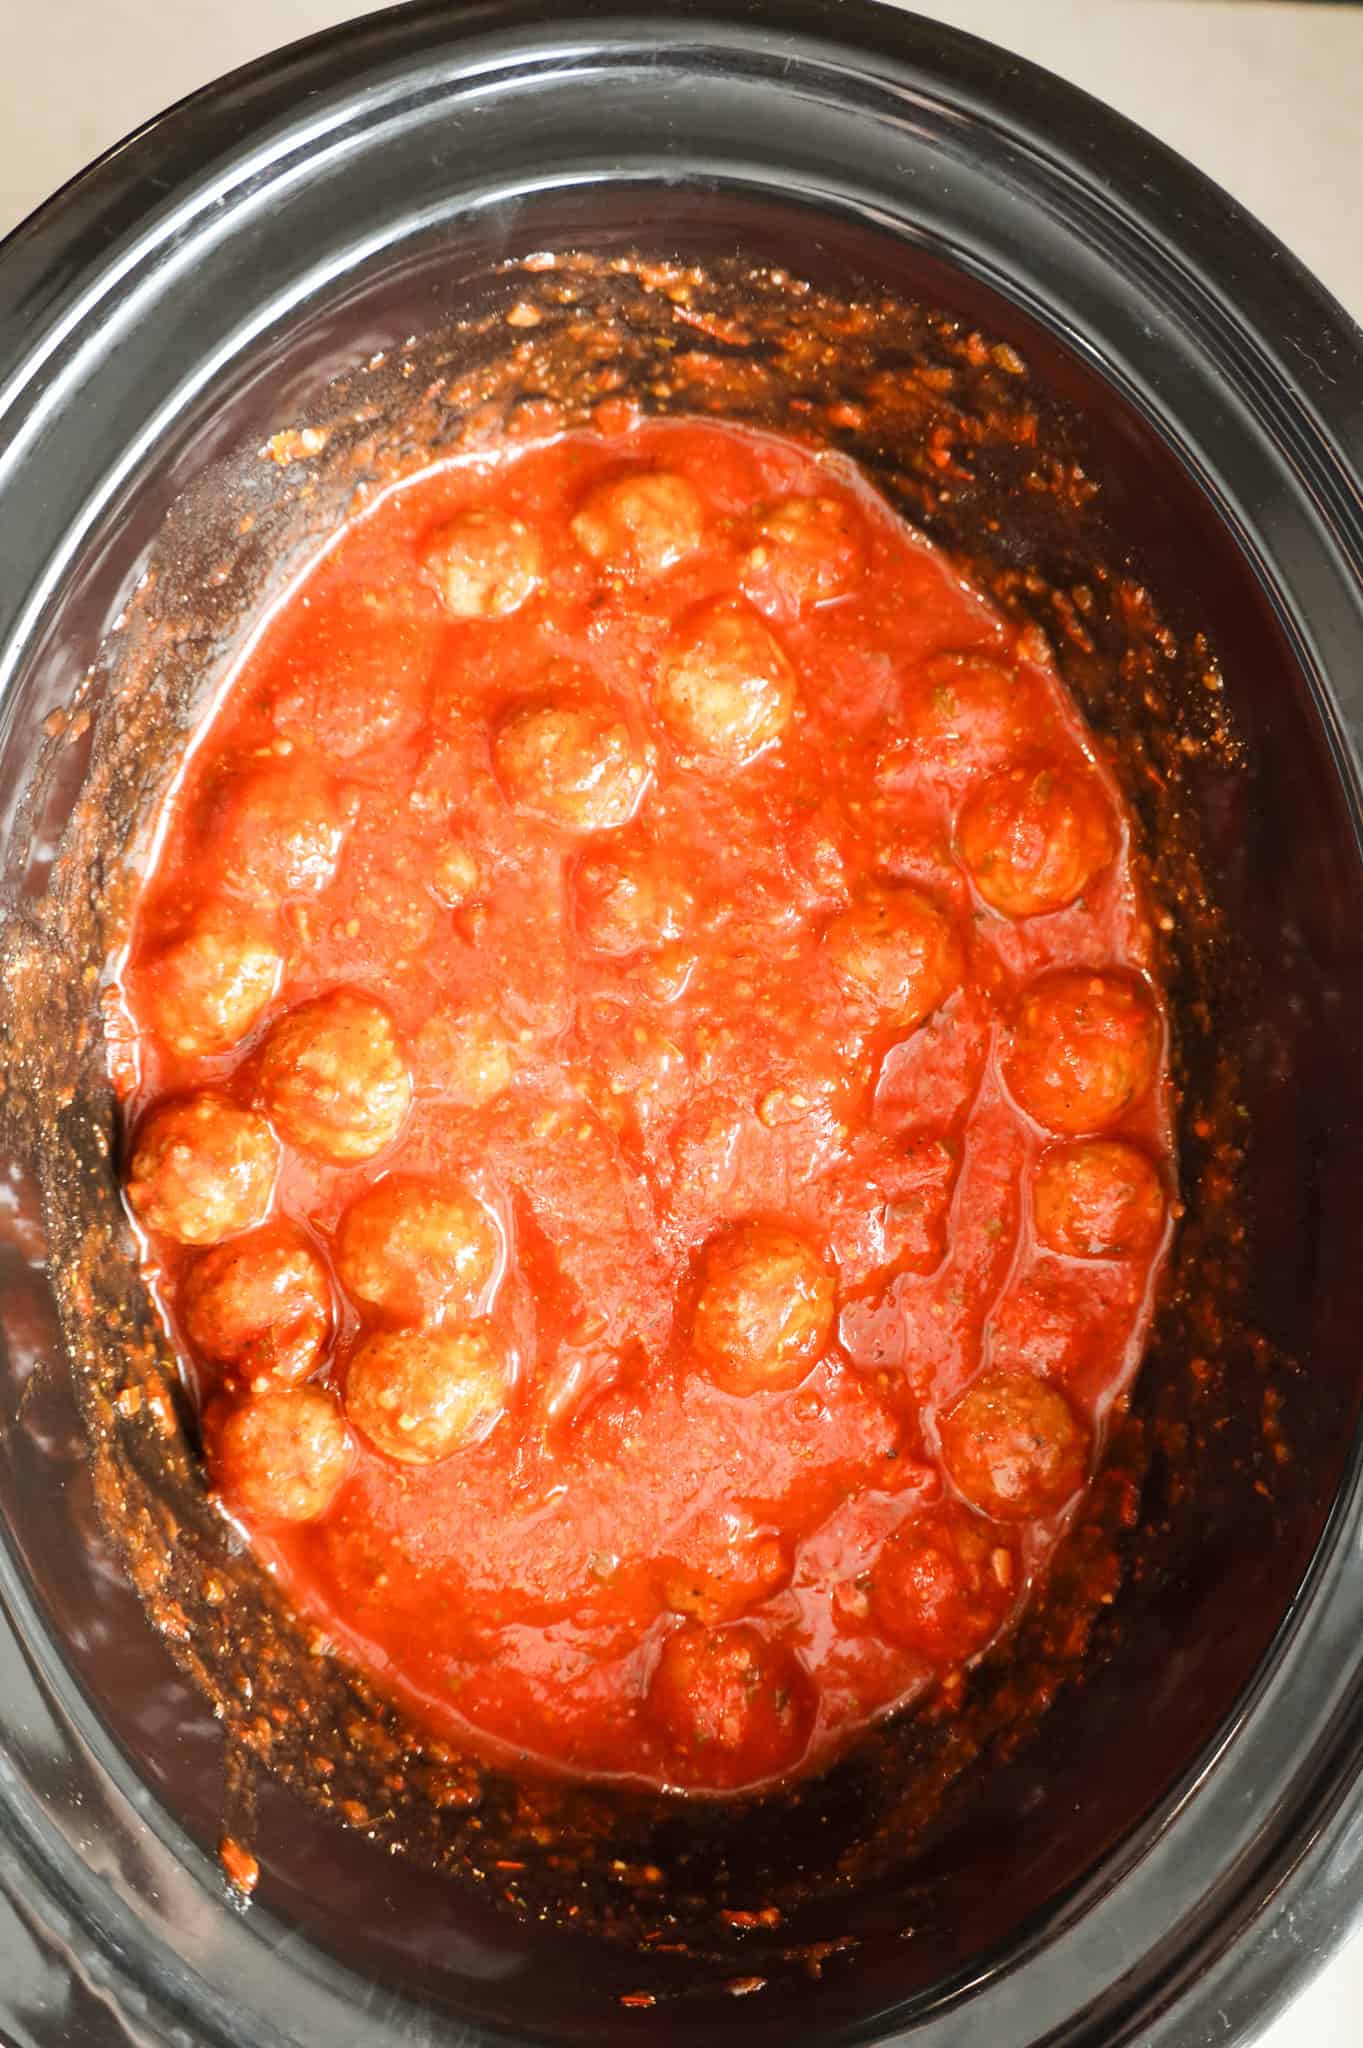 meatballs and marinara sauce in a crock pot